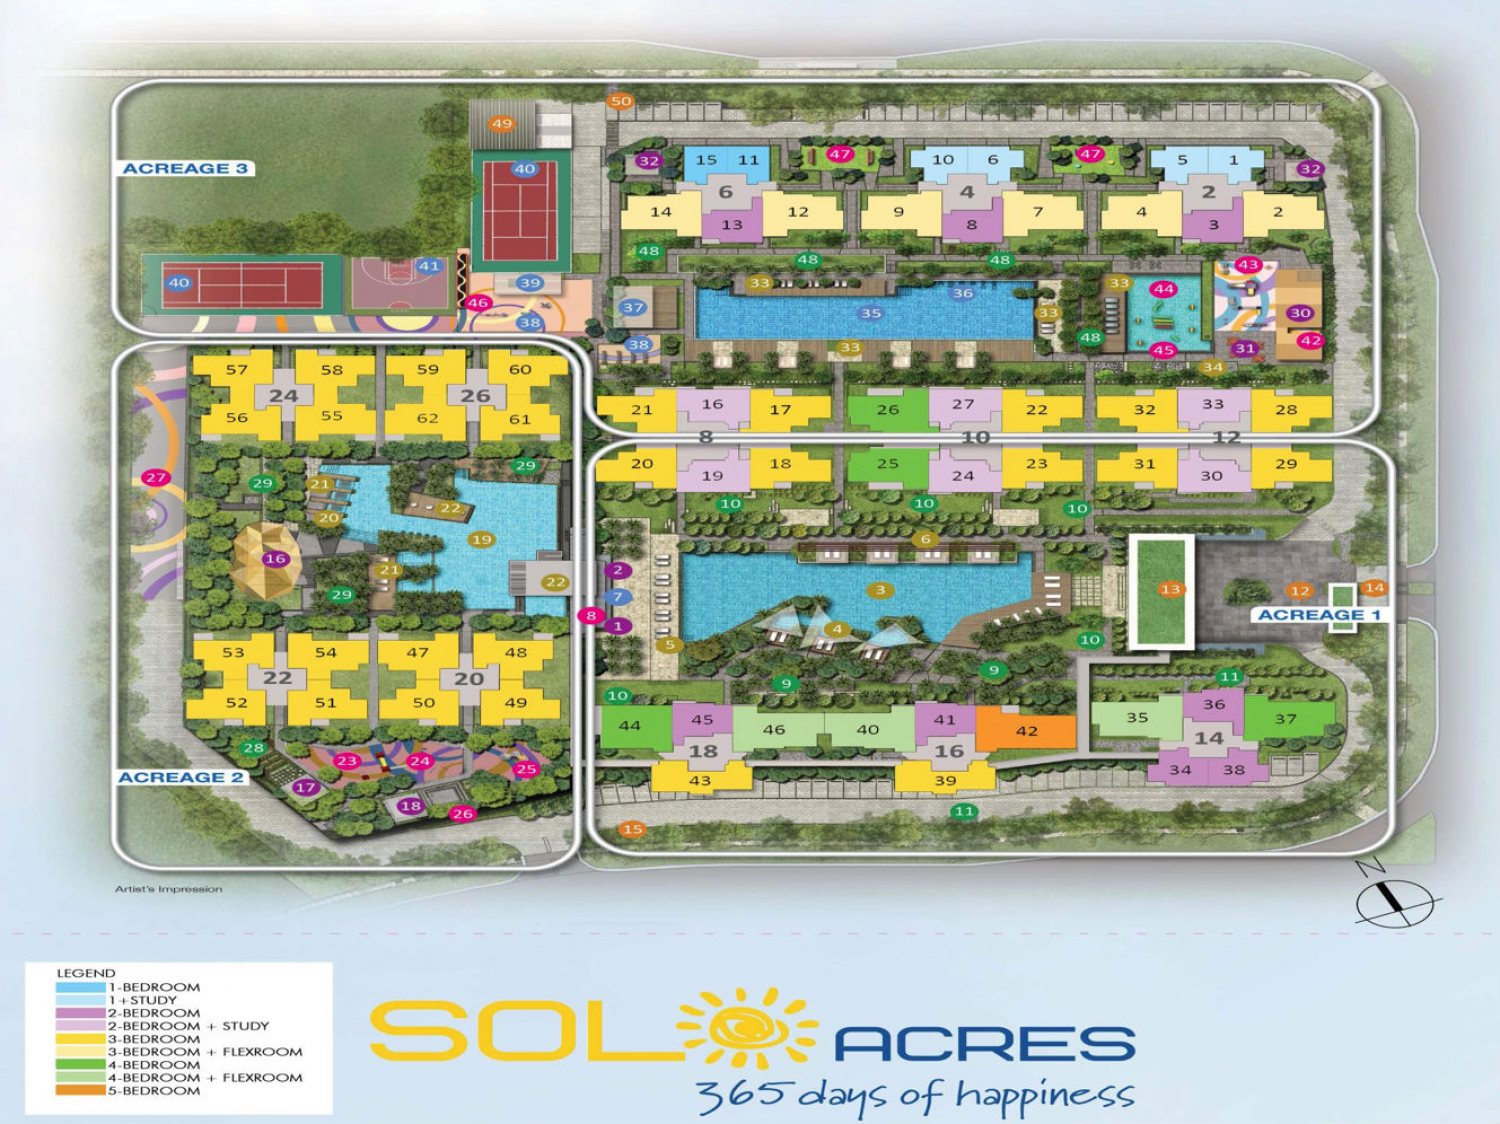 Sol Acres Site Plan